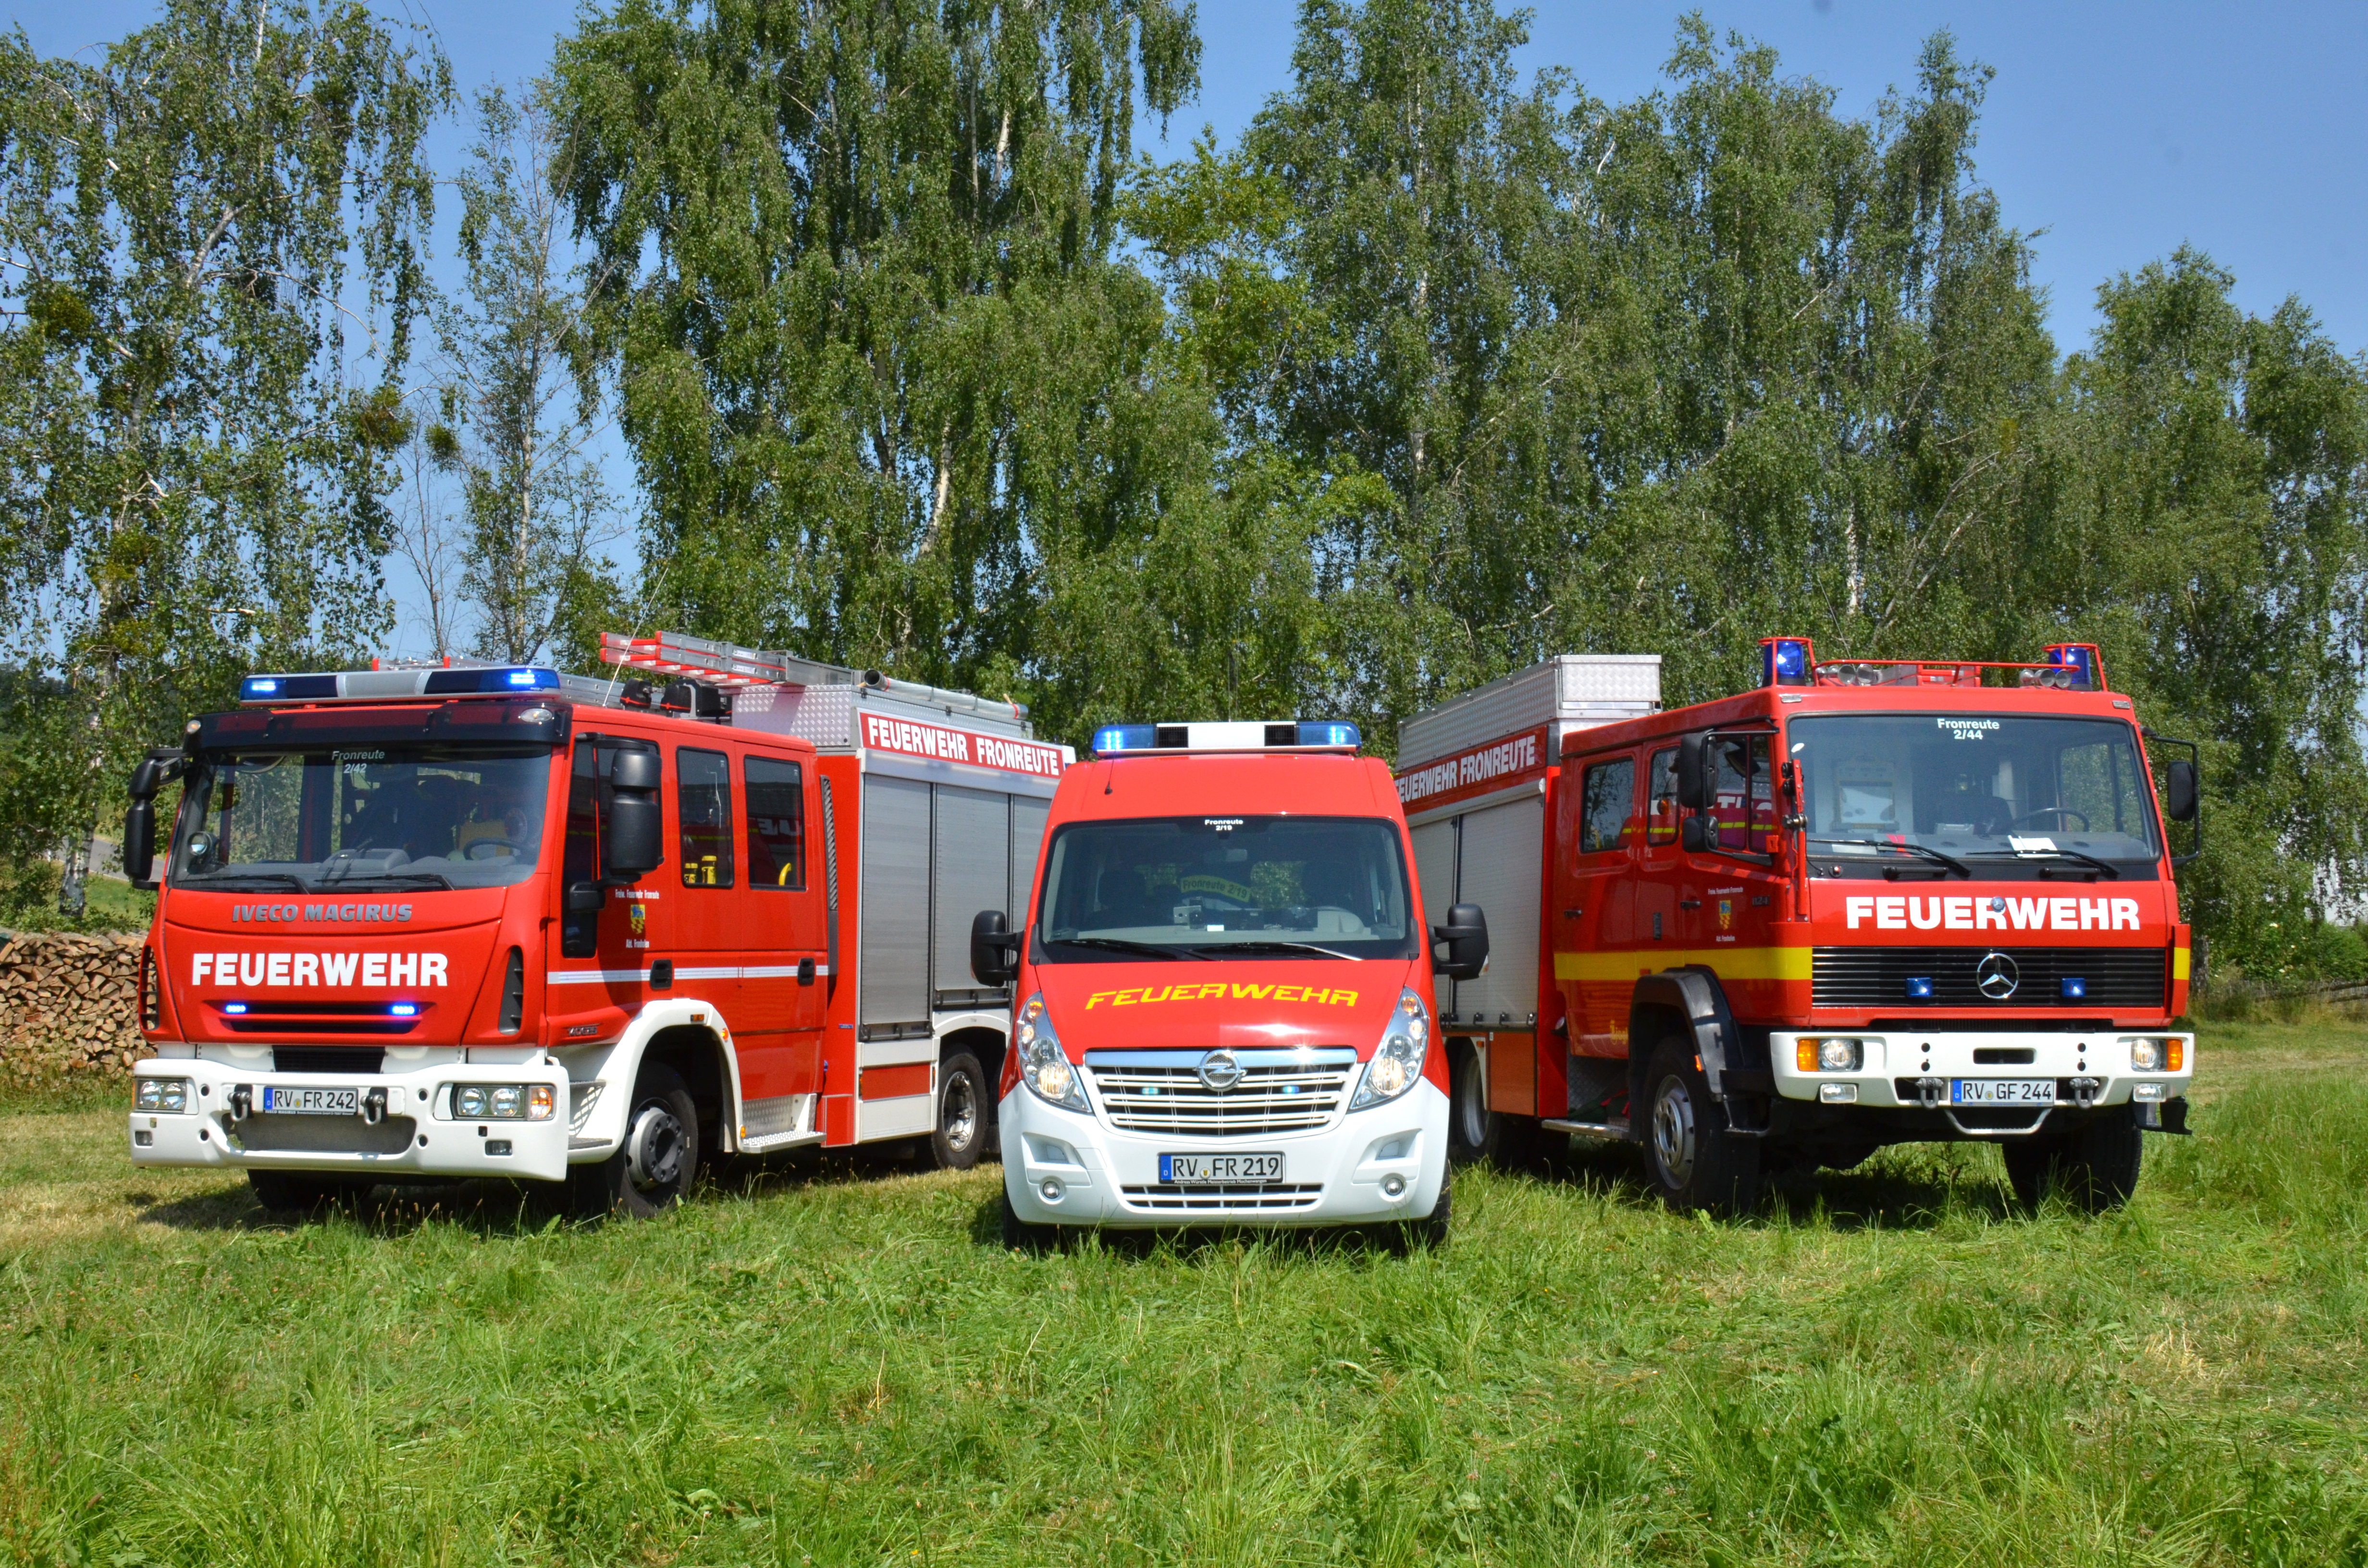 
    
            
                    Feuerwehrabteilung Fronhofen
                
        
